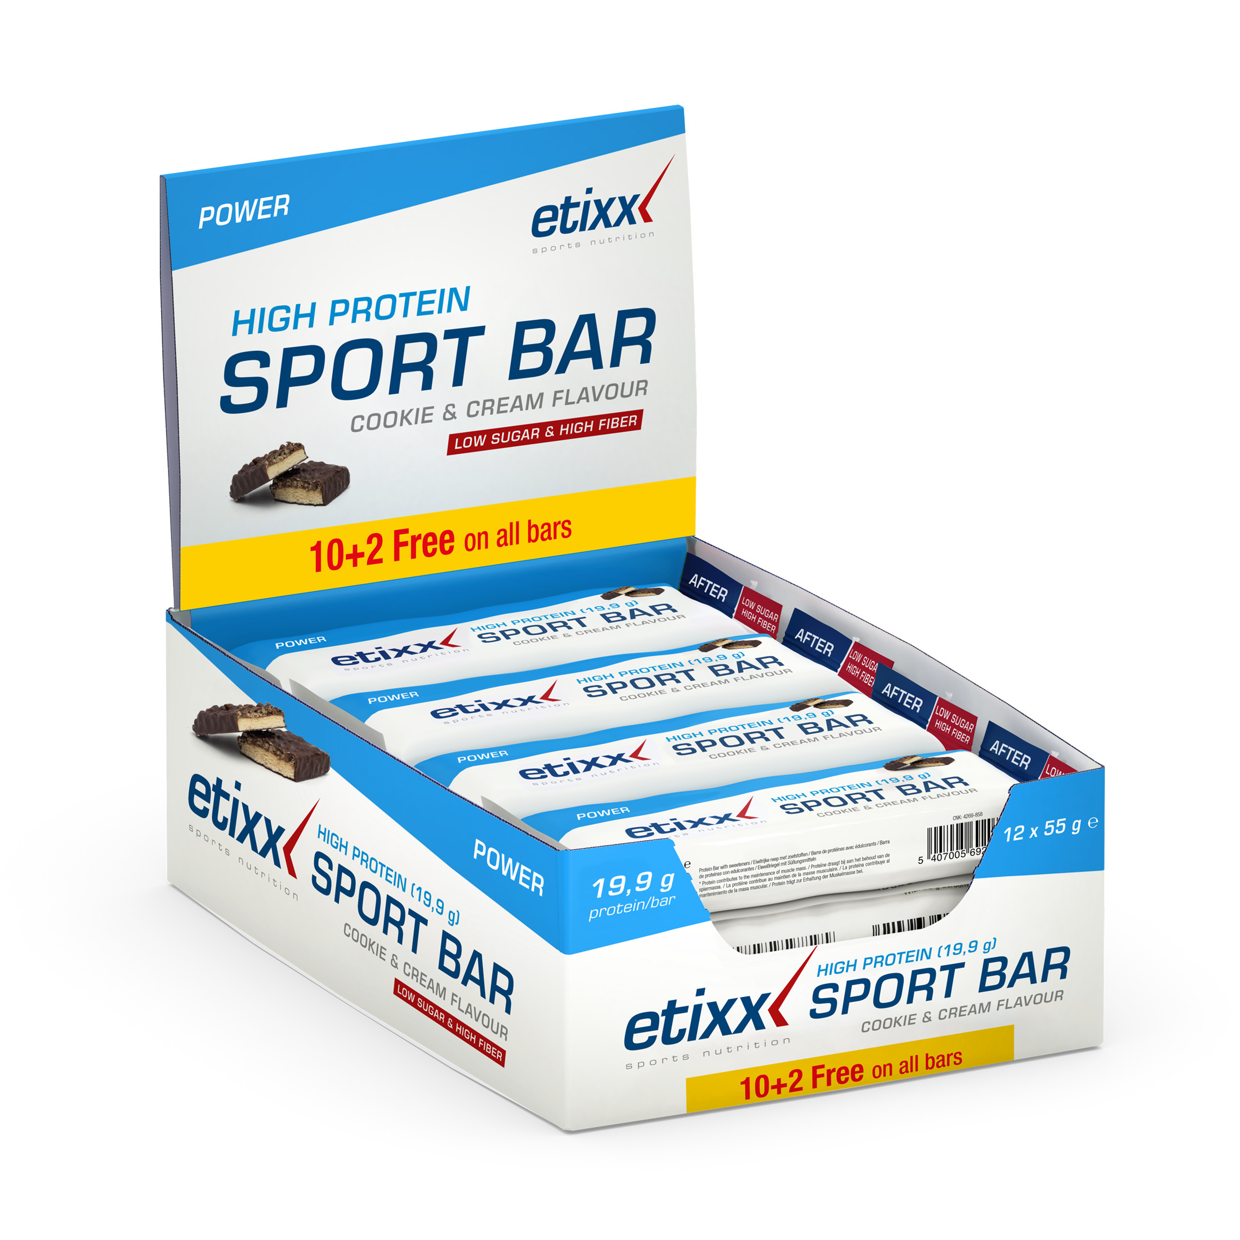 High Protein Sport Bar (Cookie & cream)